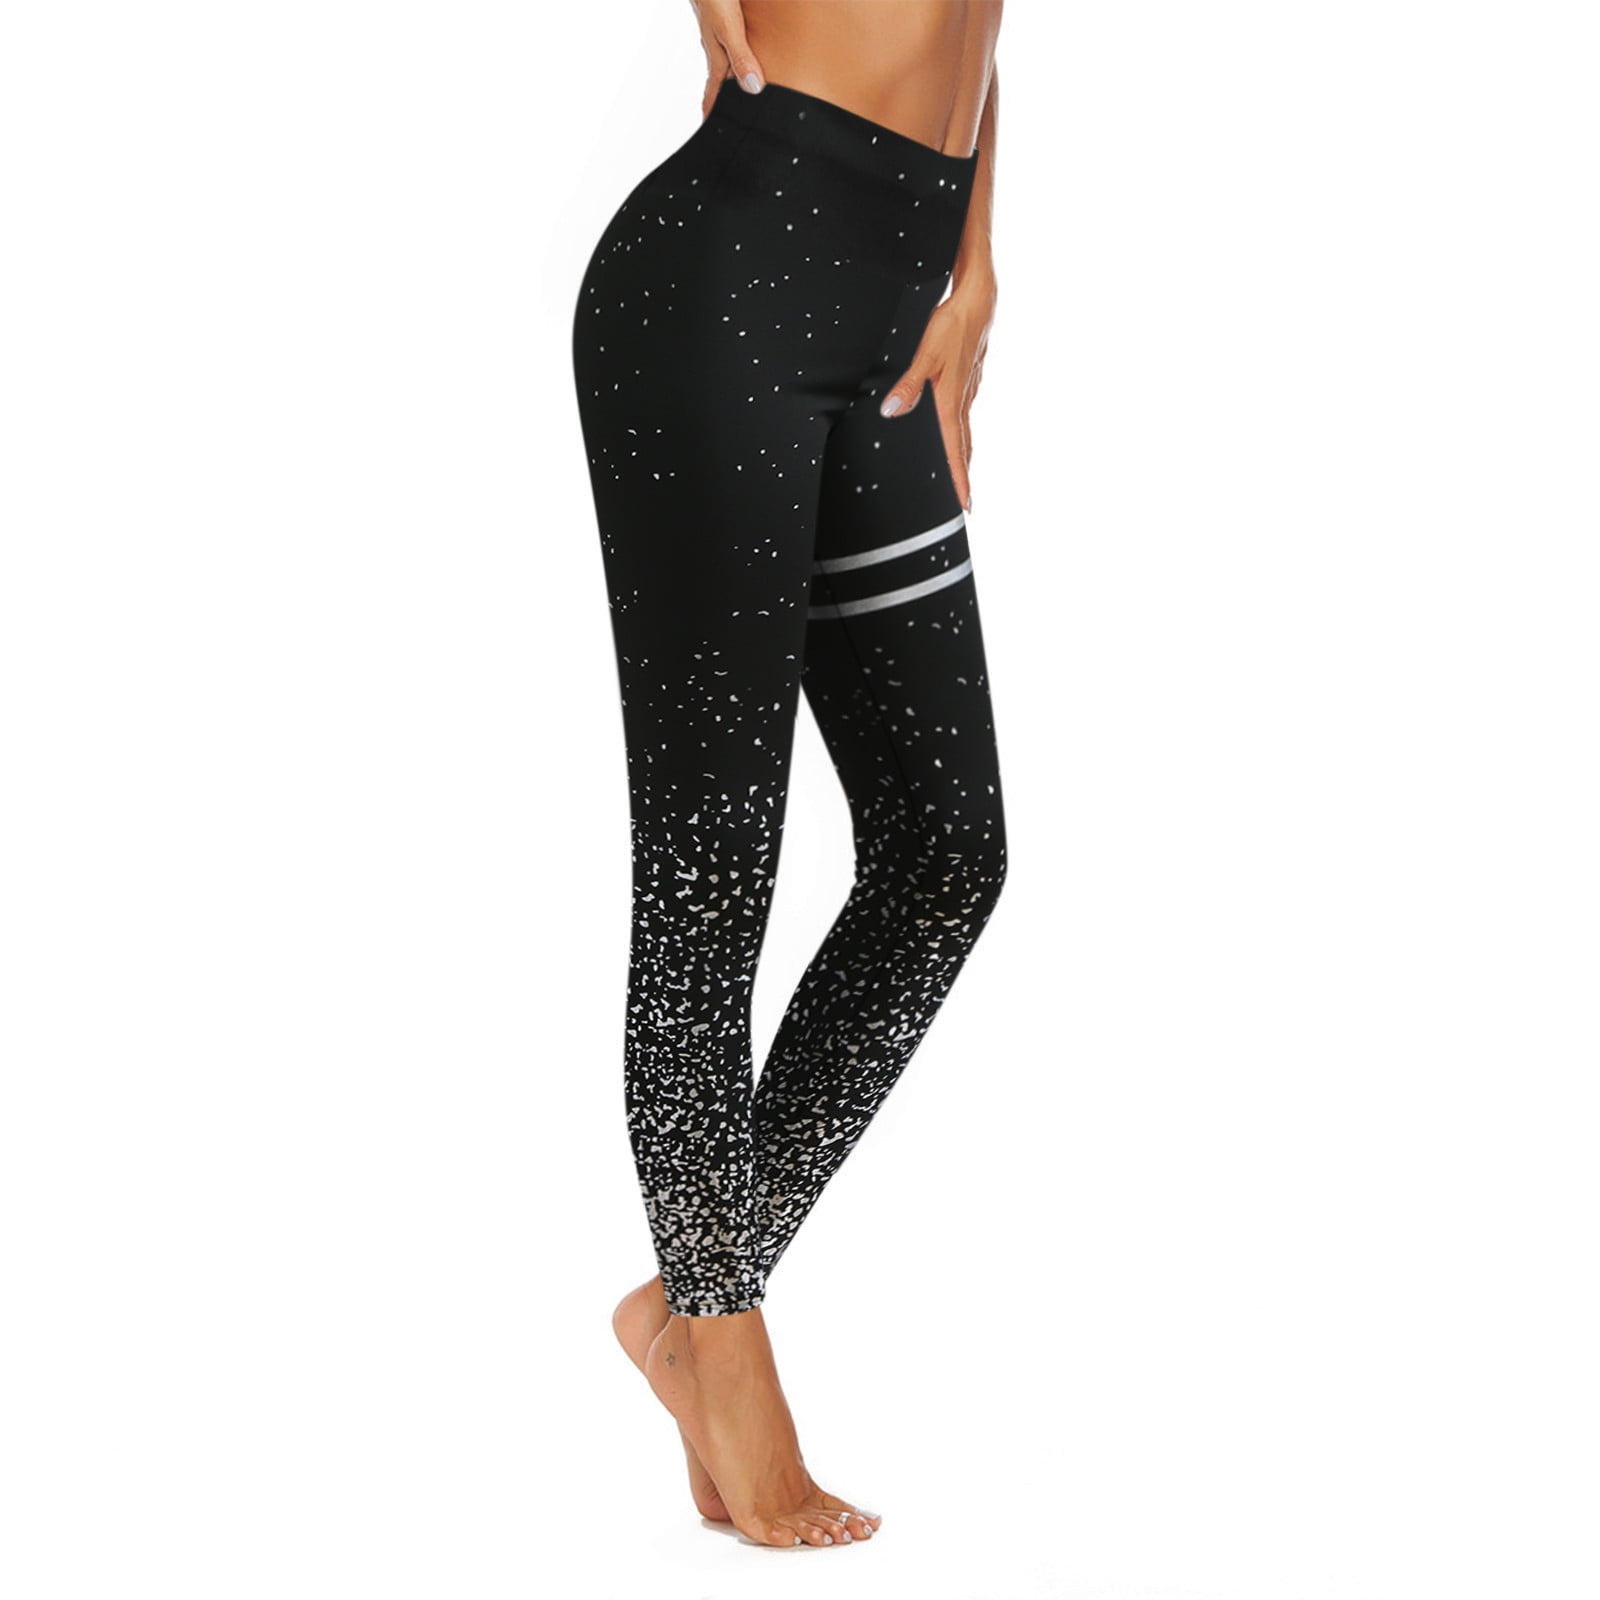 kpoplk Plus Size Yoga Pants,Women's Bootcut Yoga Pants Tummy Control Non  See Through Bootleg Gym Workout Pants(Black,XL) - Walmart.com